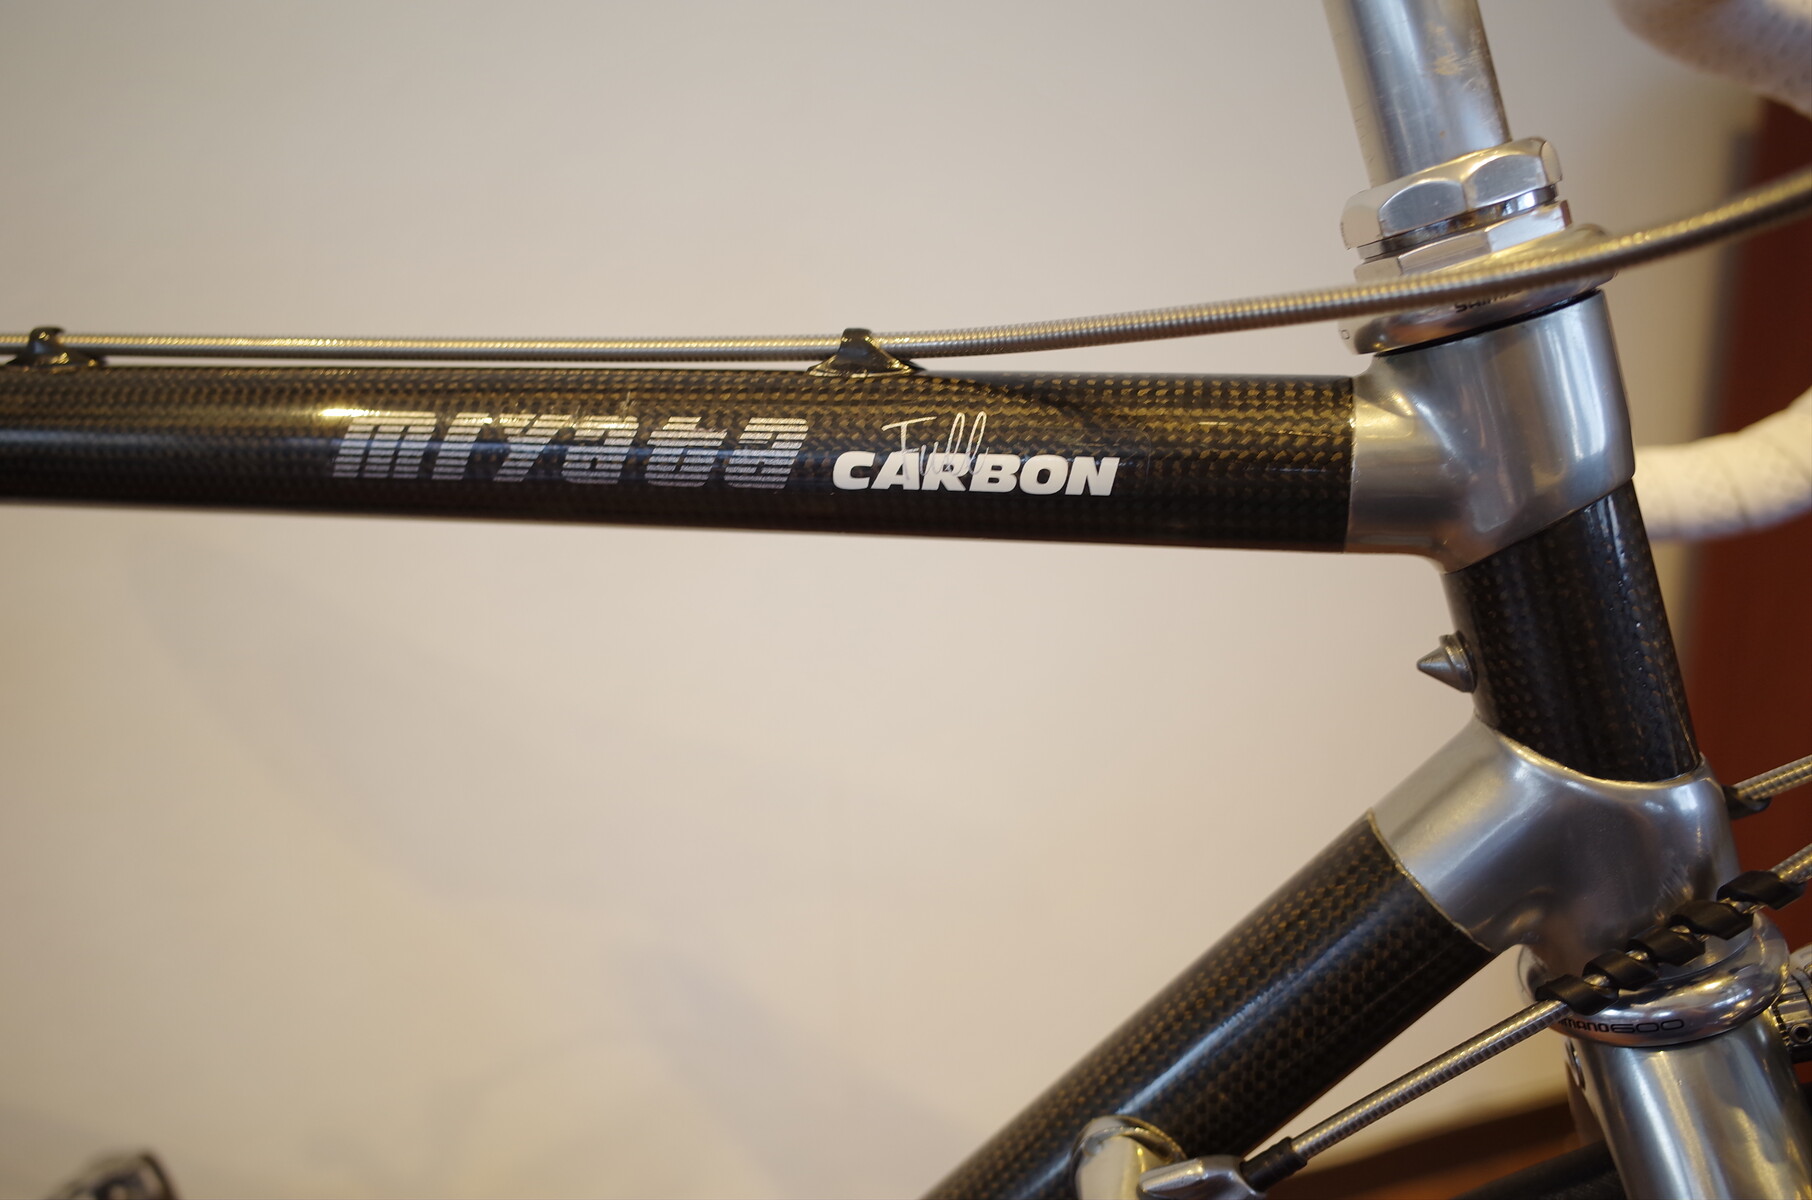 miyataのビンテージバイク Full CARBONオーバーホール : K&M CYCLE BLOG